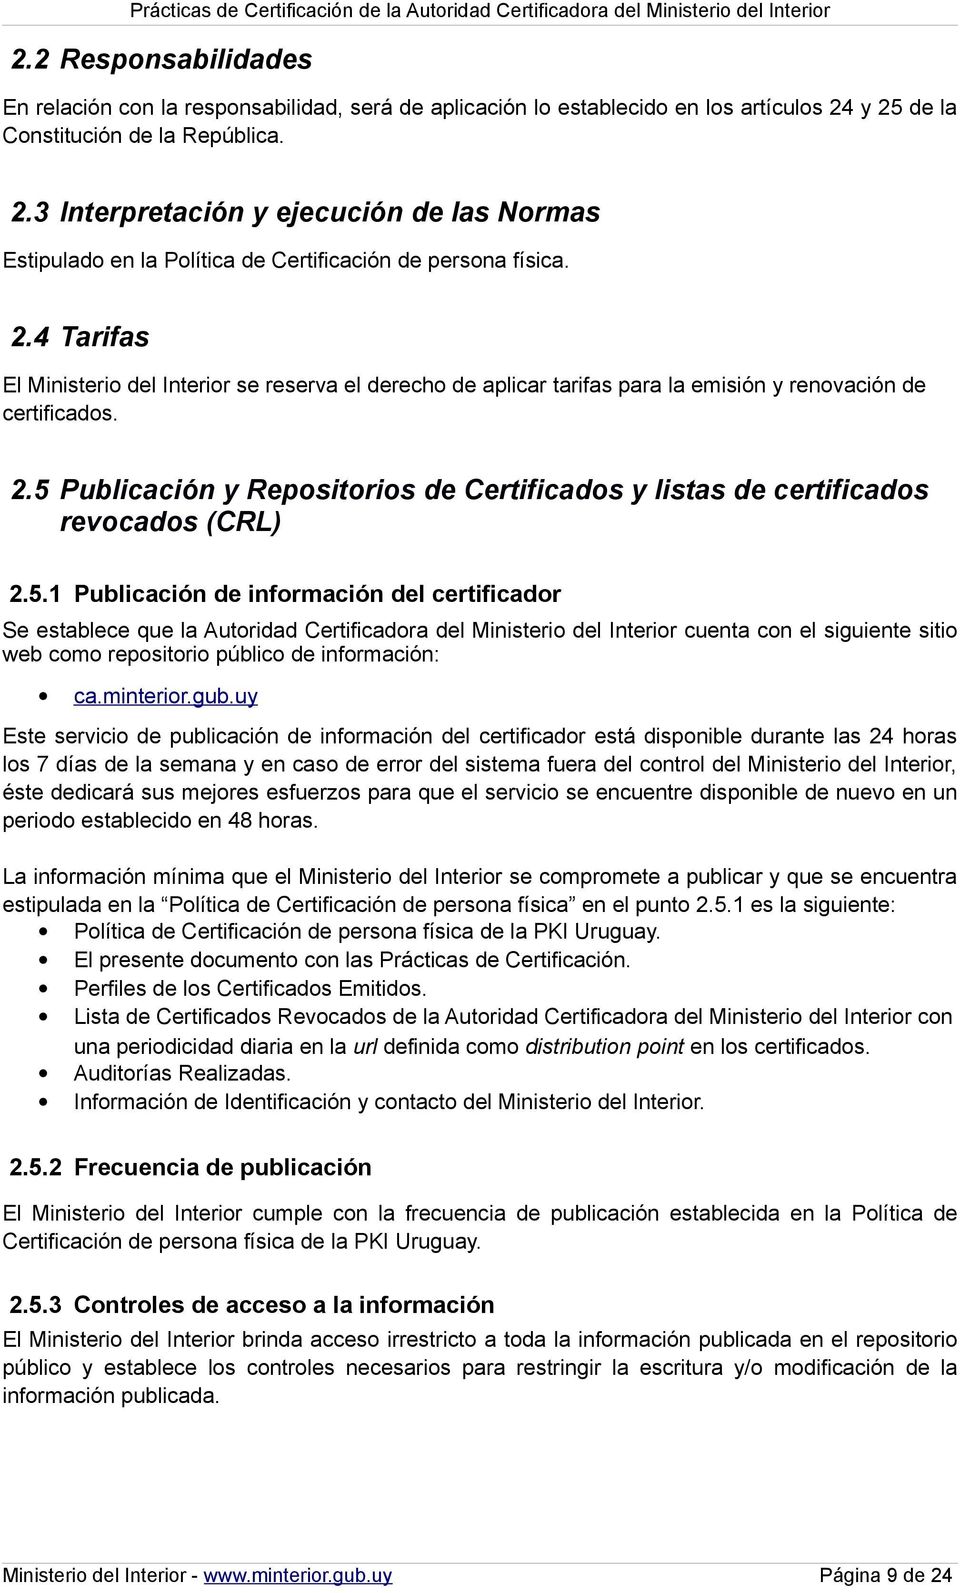 2.5 Publicación y Repositorios de Certificados y listas de certificados revocados (CRL) 2.5.1 Publicación de información del certificador Se establece que la Autoridad Certificadora del Ministerio del Interior cuenta con el siguiente sitio web como repositorio público de información: ca.